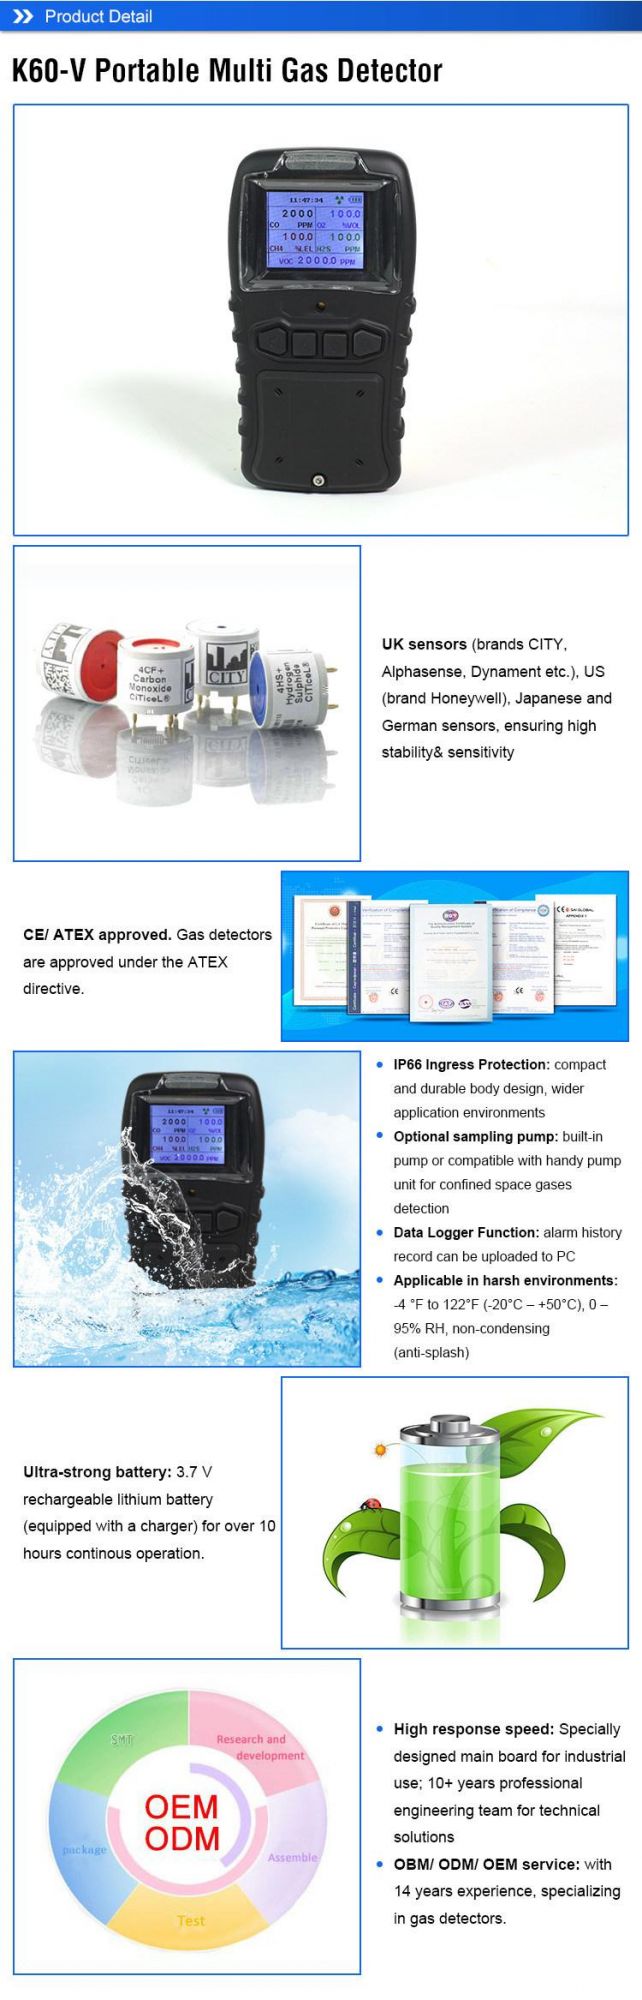 Portable Multigas Detector Against 4 Common Gas Hazards